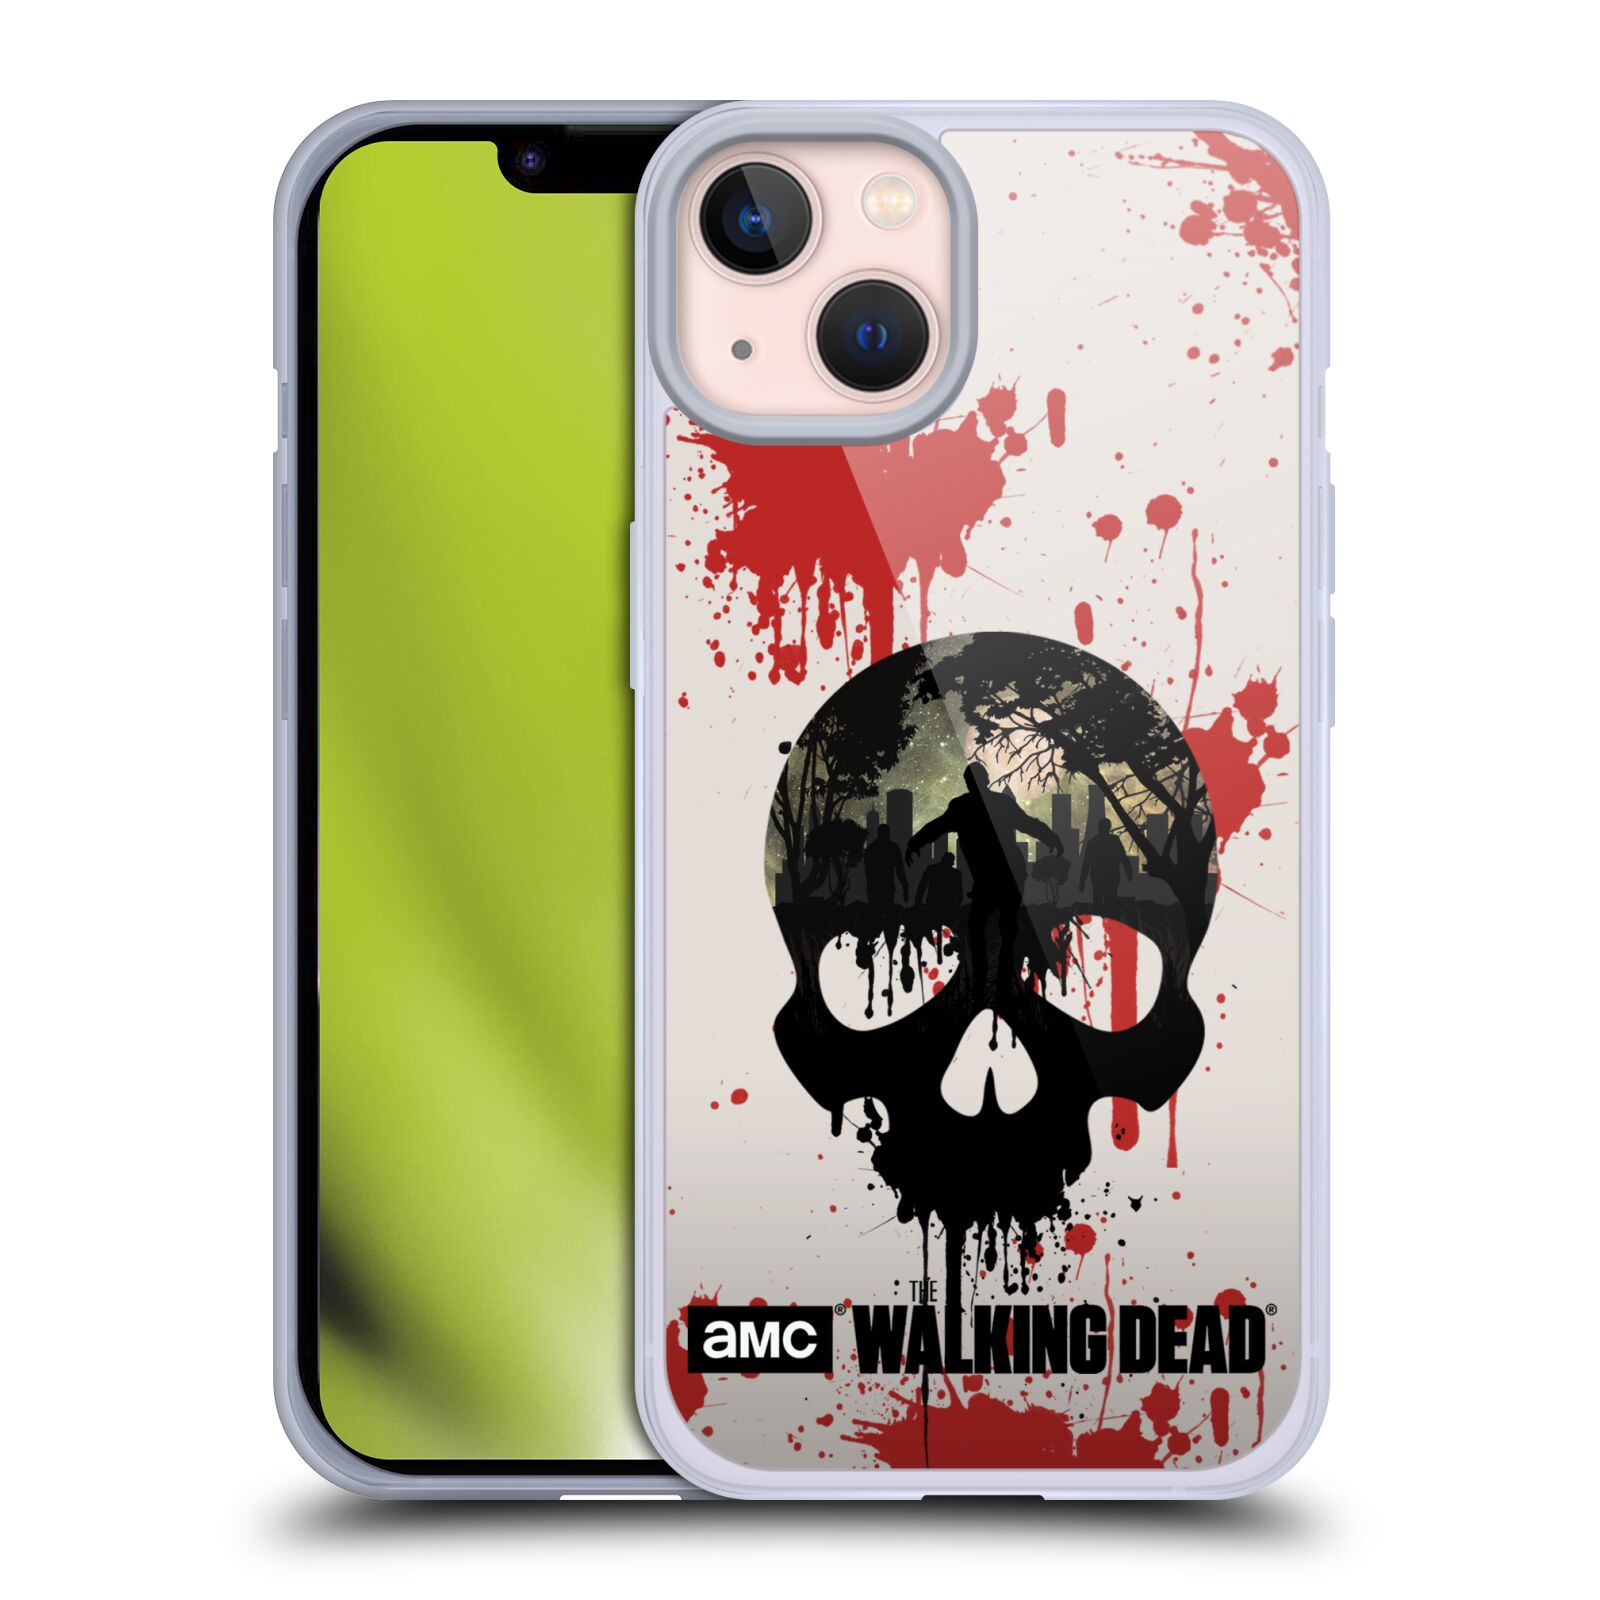 Silikonové pouzdro na mobil Apple iPhone 13 - Head Case - Živí mrtví - Lebka (Silikonový kryt, obal, pouzdro na mobilní telefon Apple iPhone 13 s motivem Živí mrtví - Lebka)